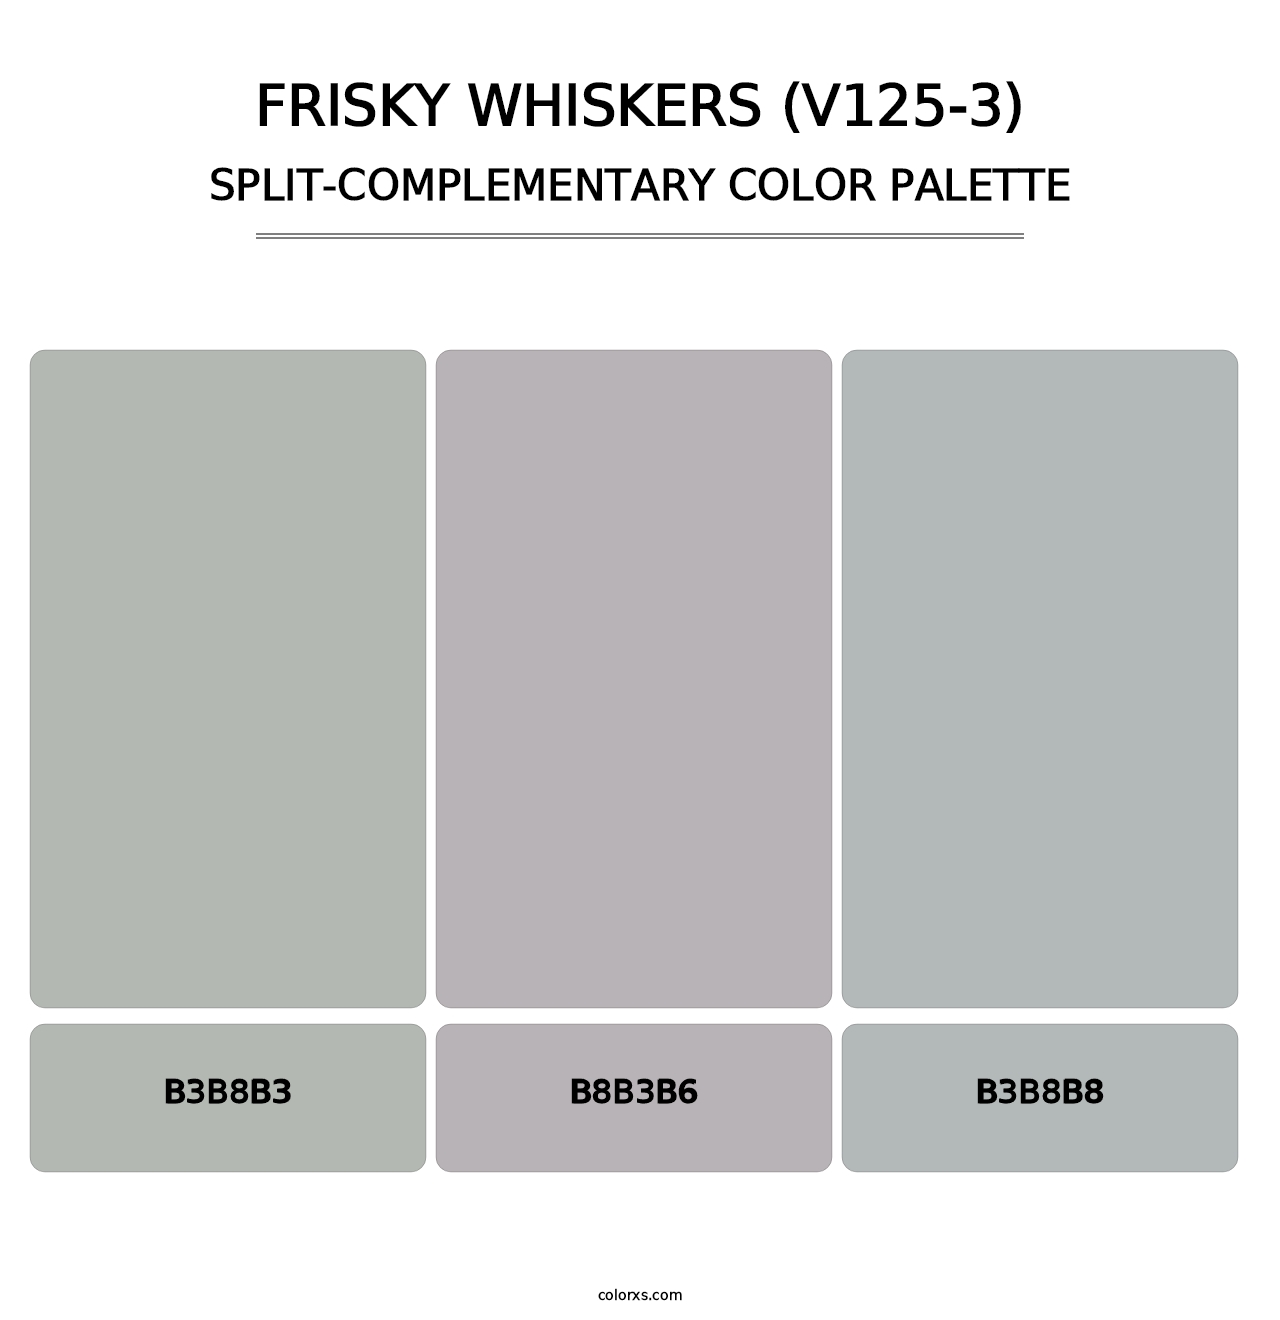 Frisky Whiskers (V125-3) - Split-Complementary Color Palette